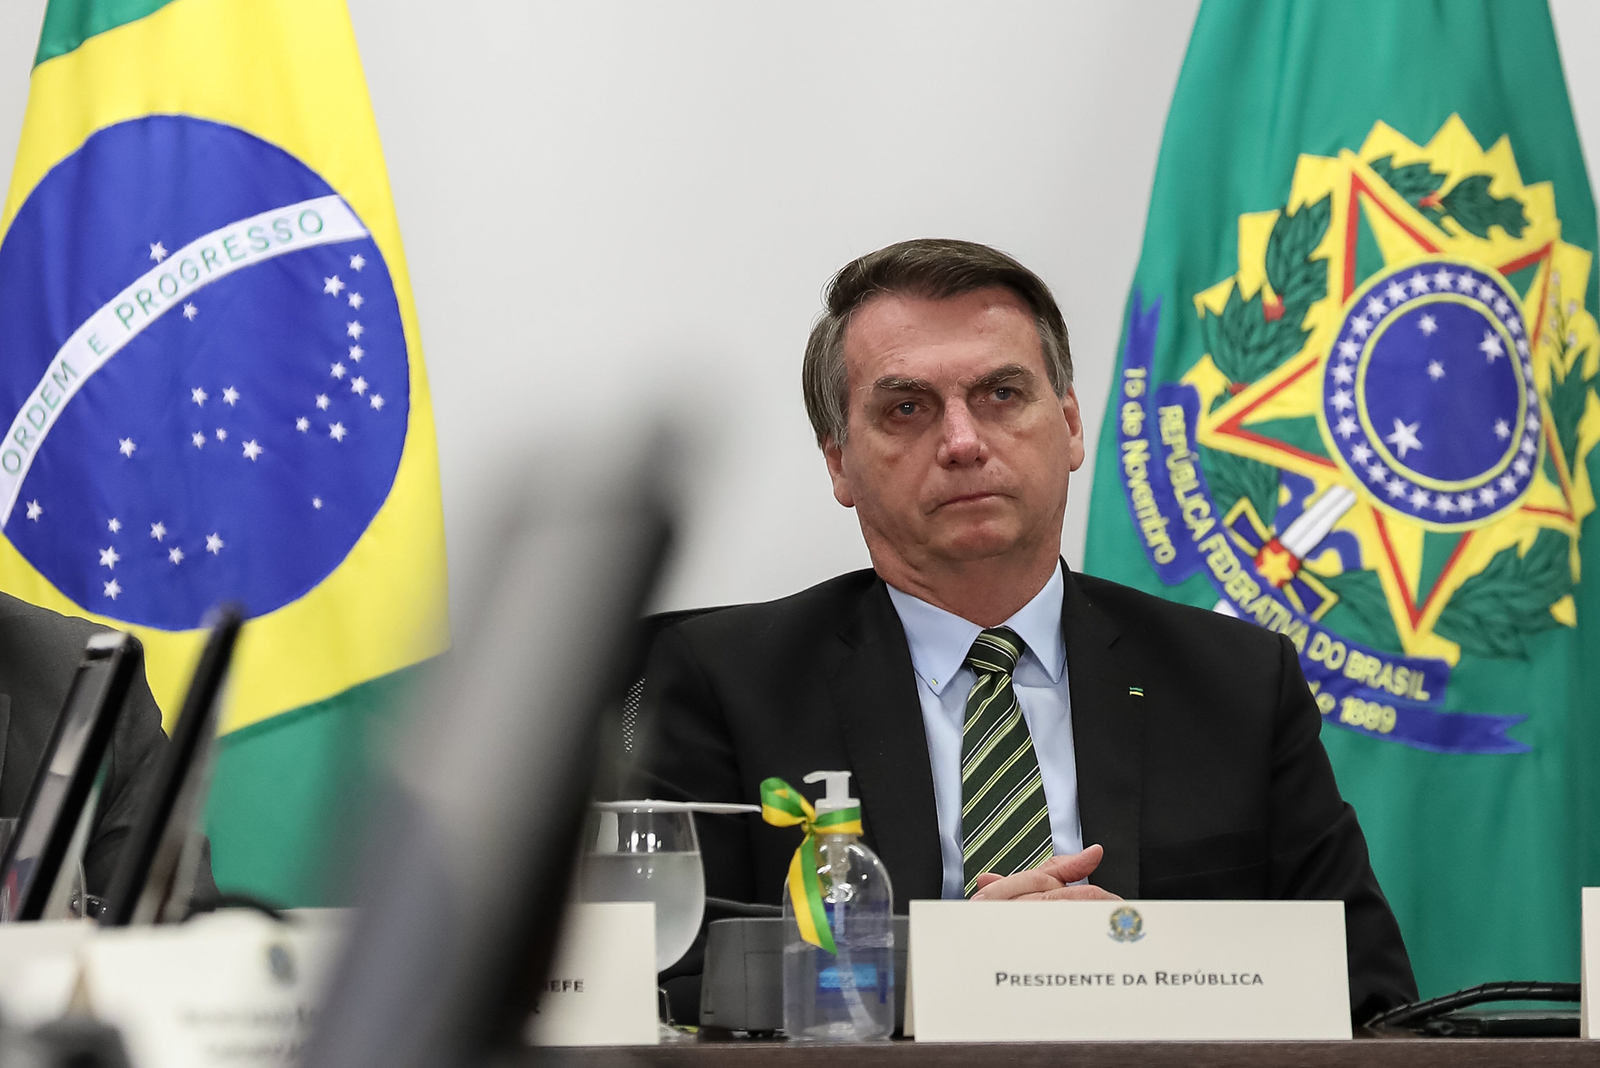 Após operação contra aliados, Bolsonaro fala em abusos e ideias perseguidas